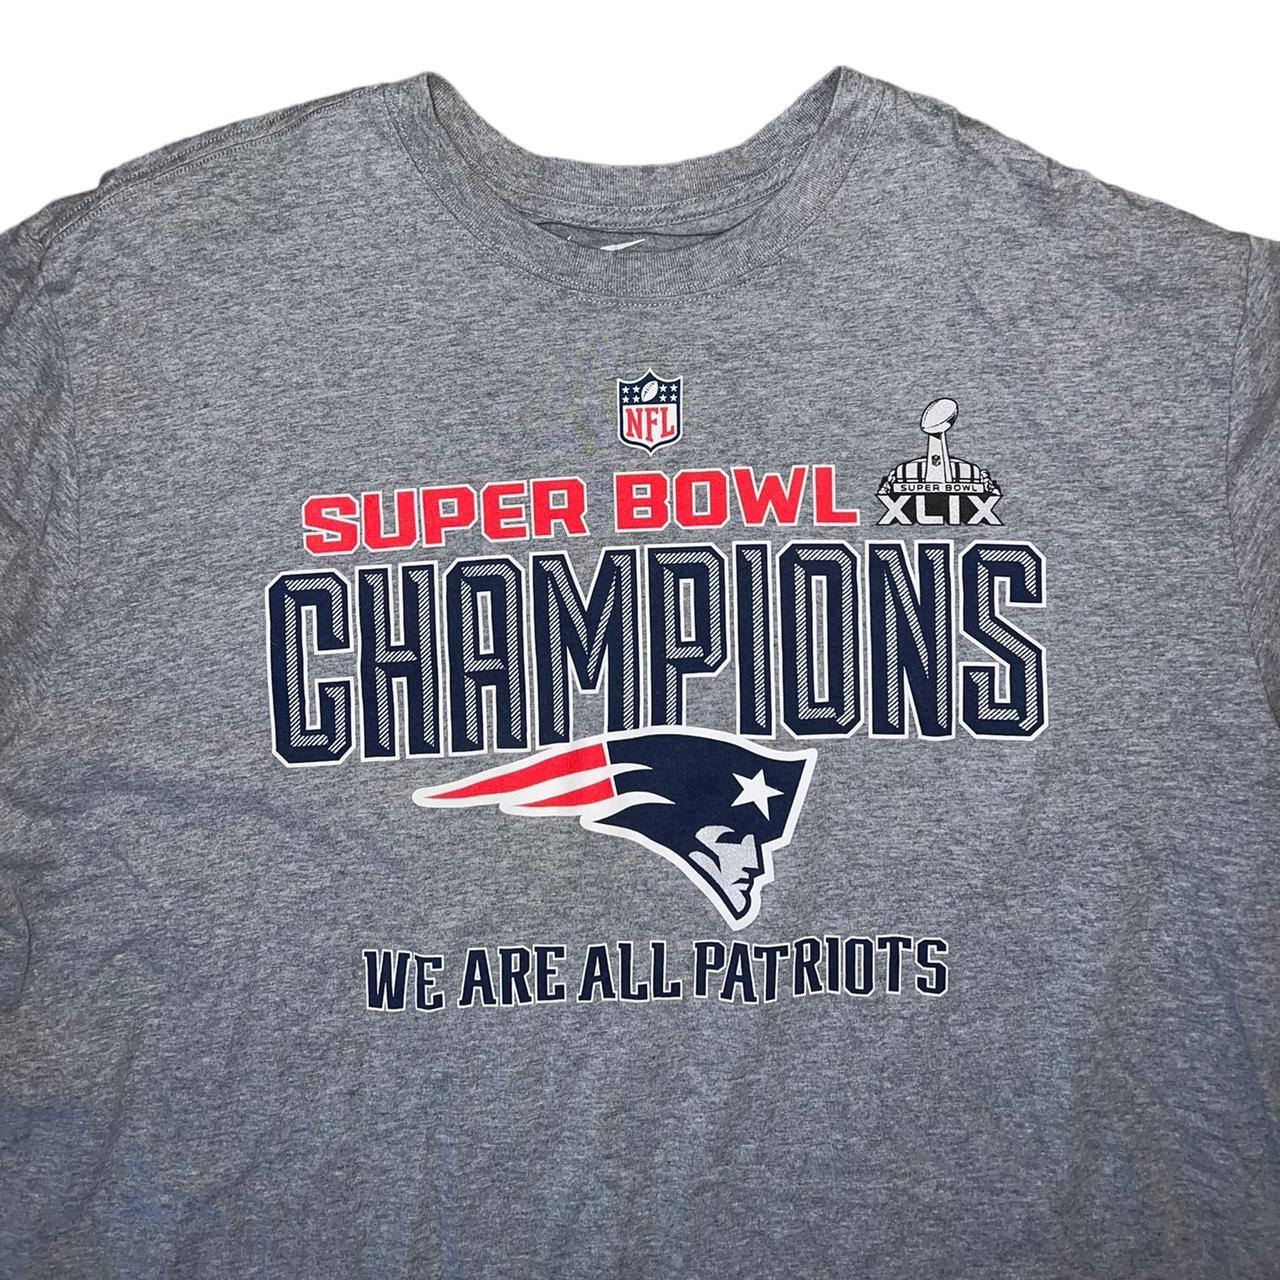 Nike Super Bowl XLIX shirt New England Patriots vs - Depop